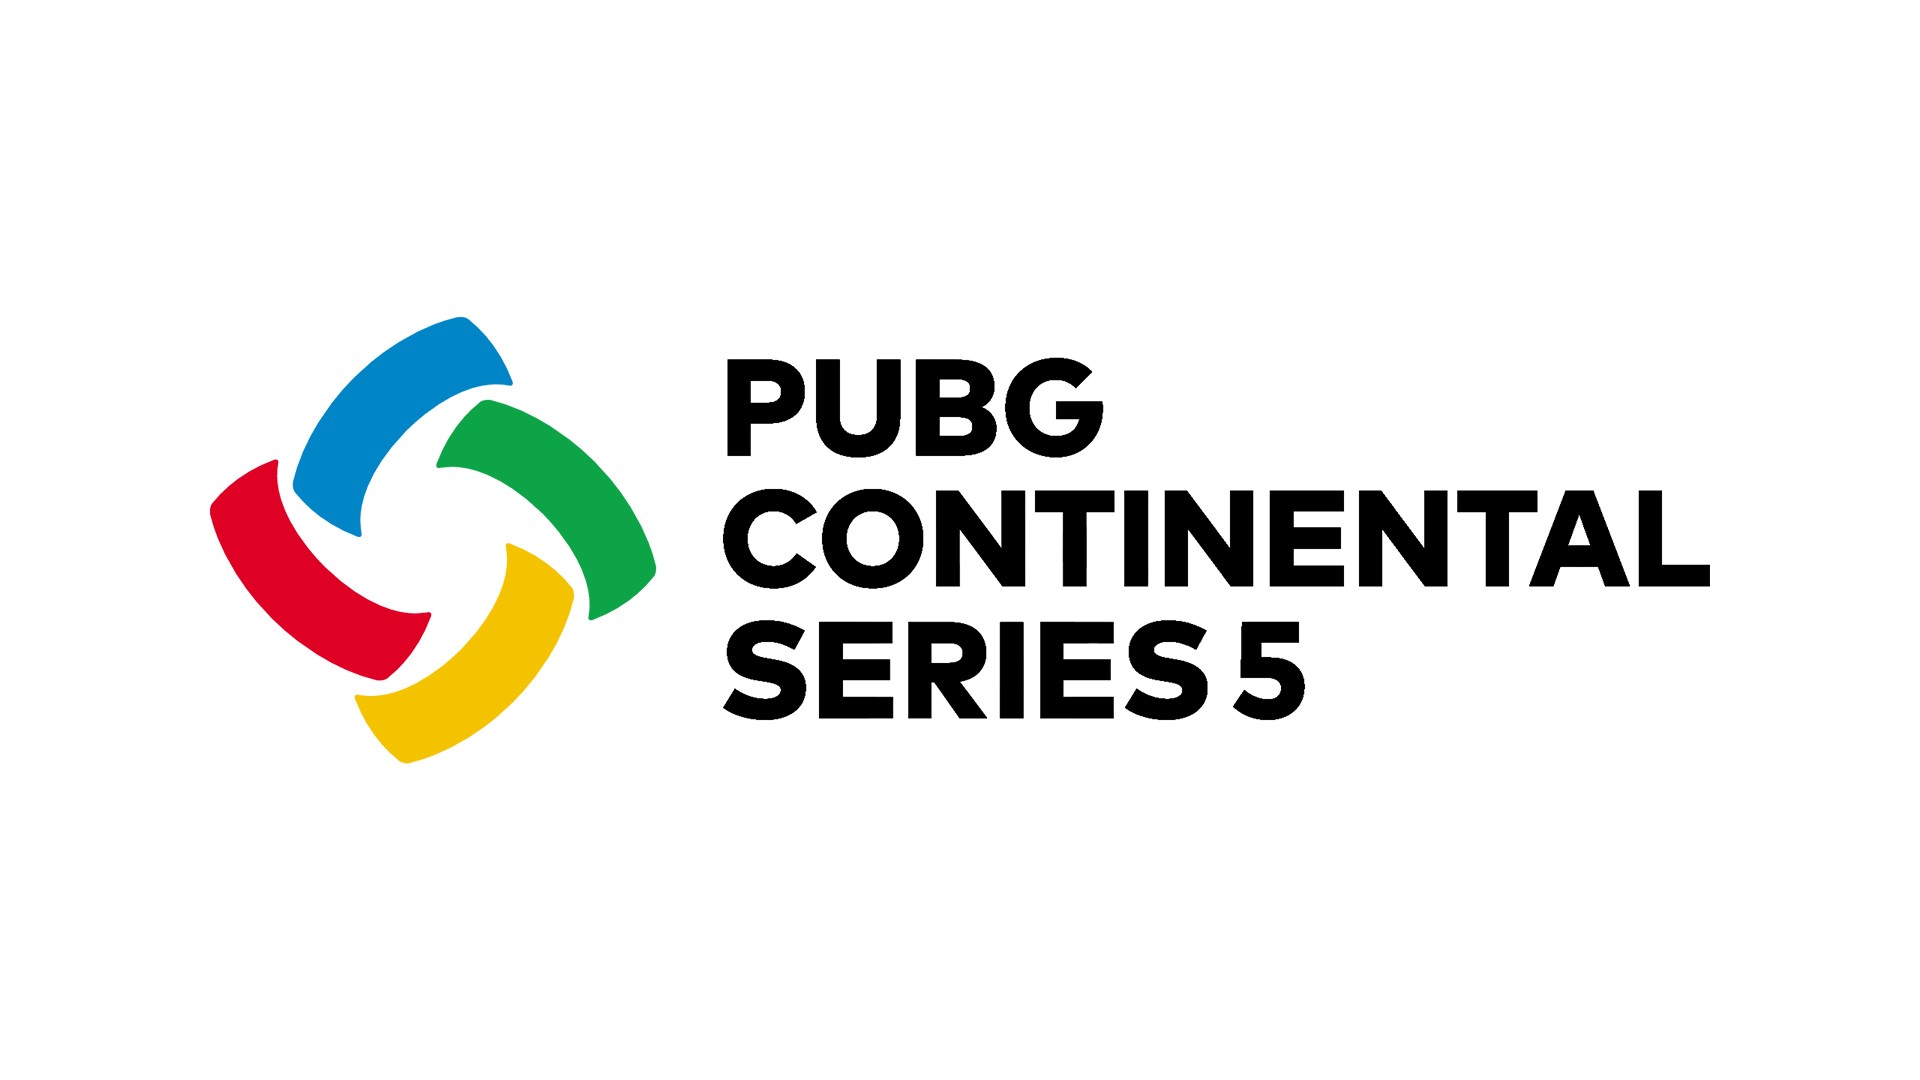 《绝地求生》洲际赛 PCS5 预定 9 月开战 公开赛制相关资讯